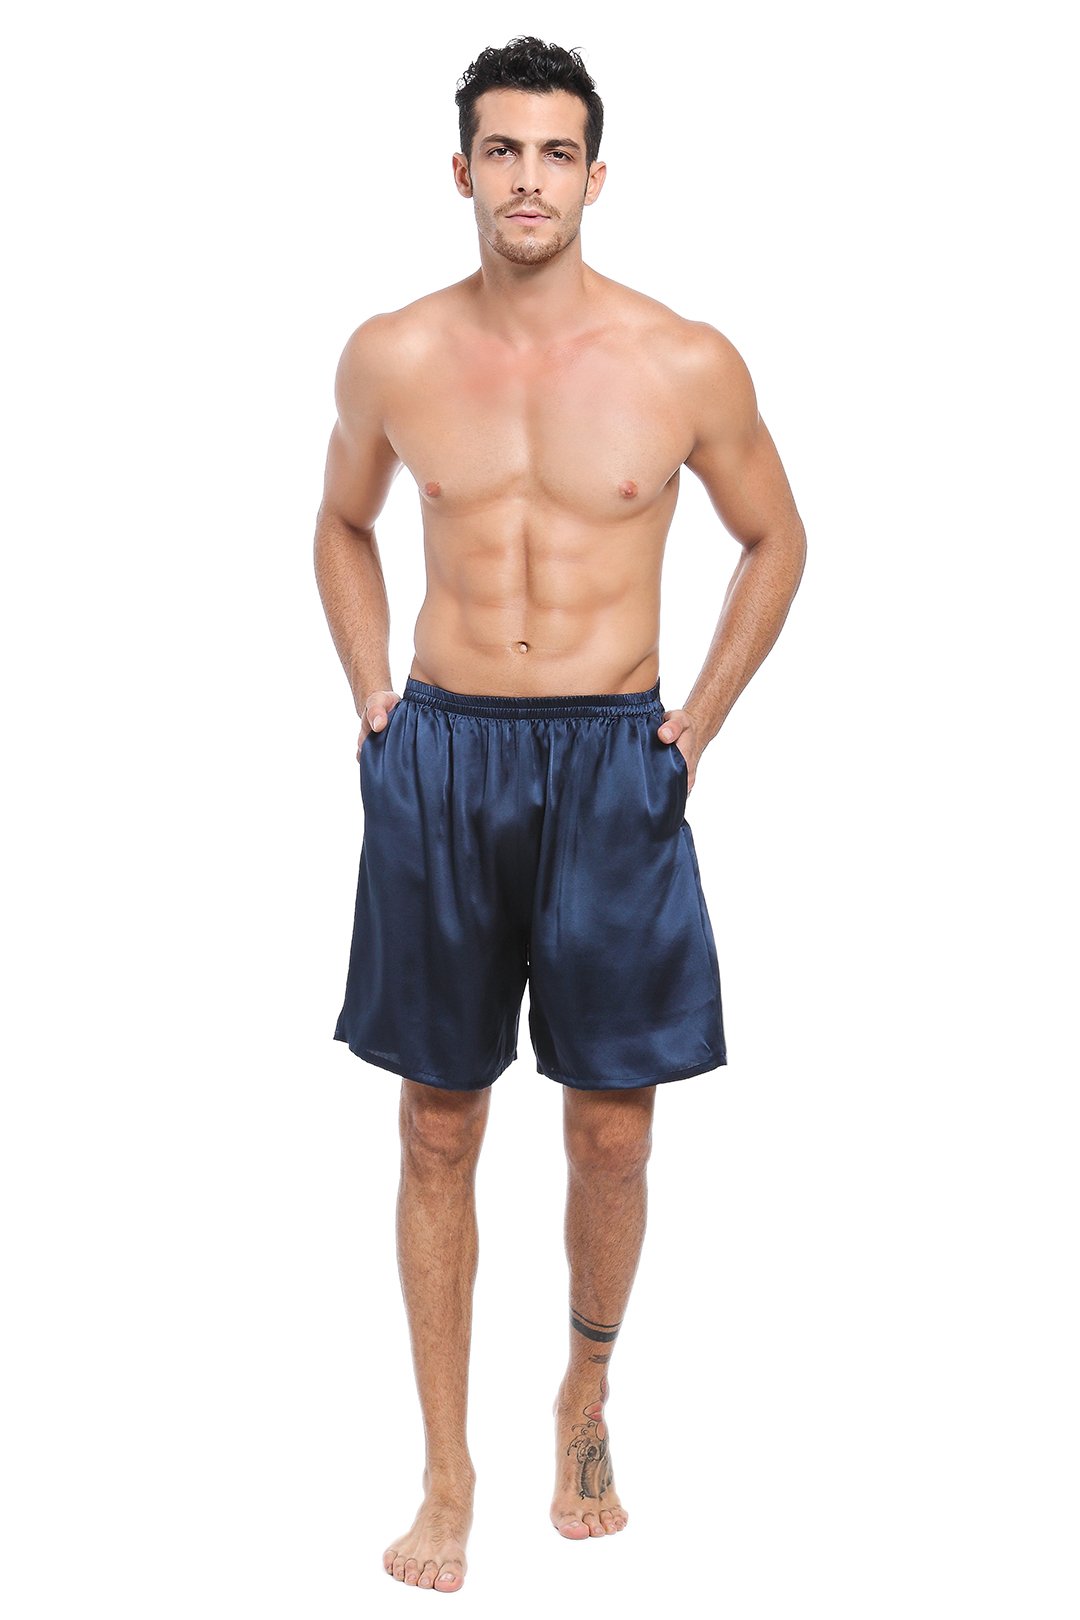 Stance boxer shorts Happy Pelican men's blue color buy on PRM